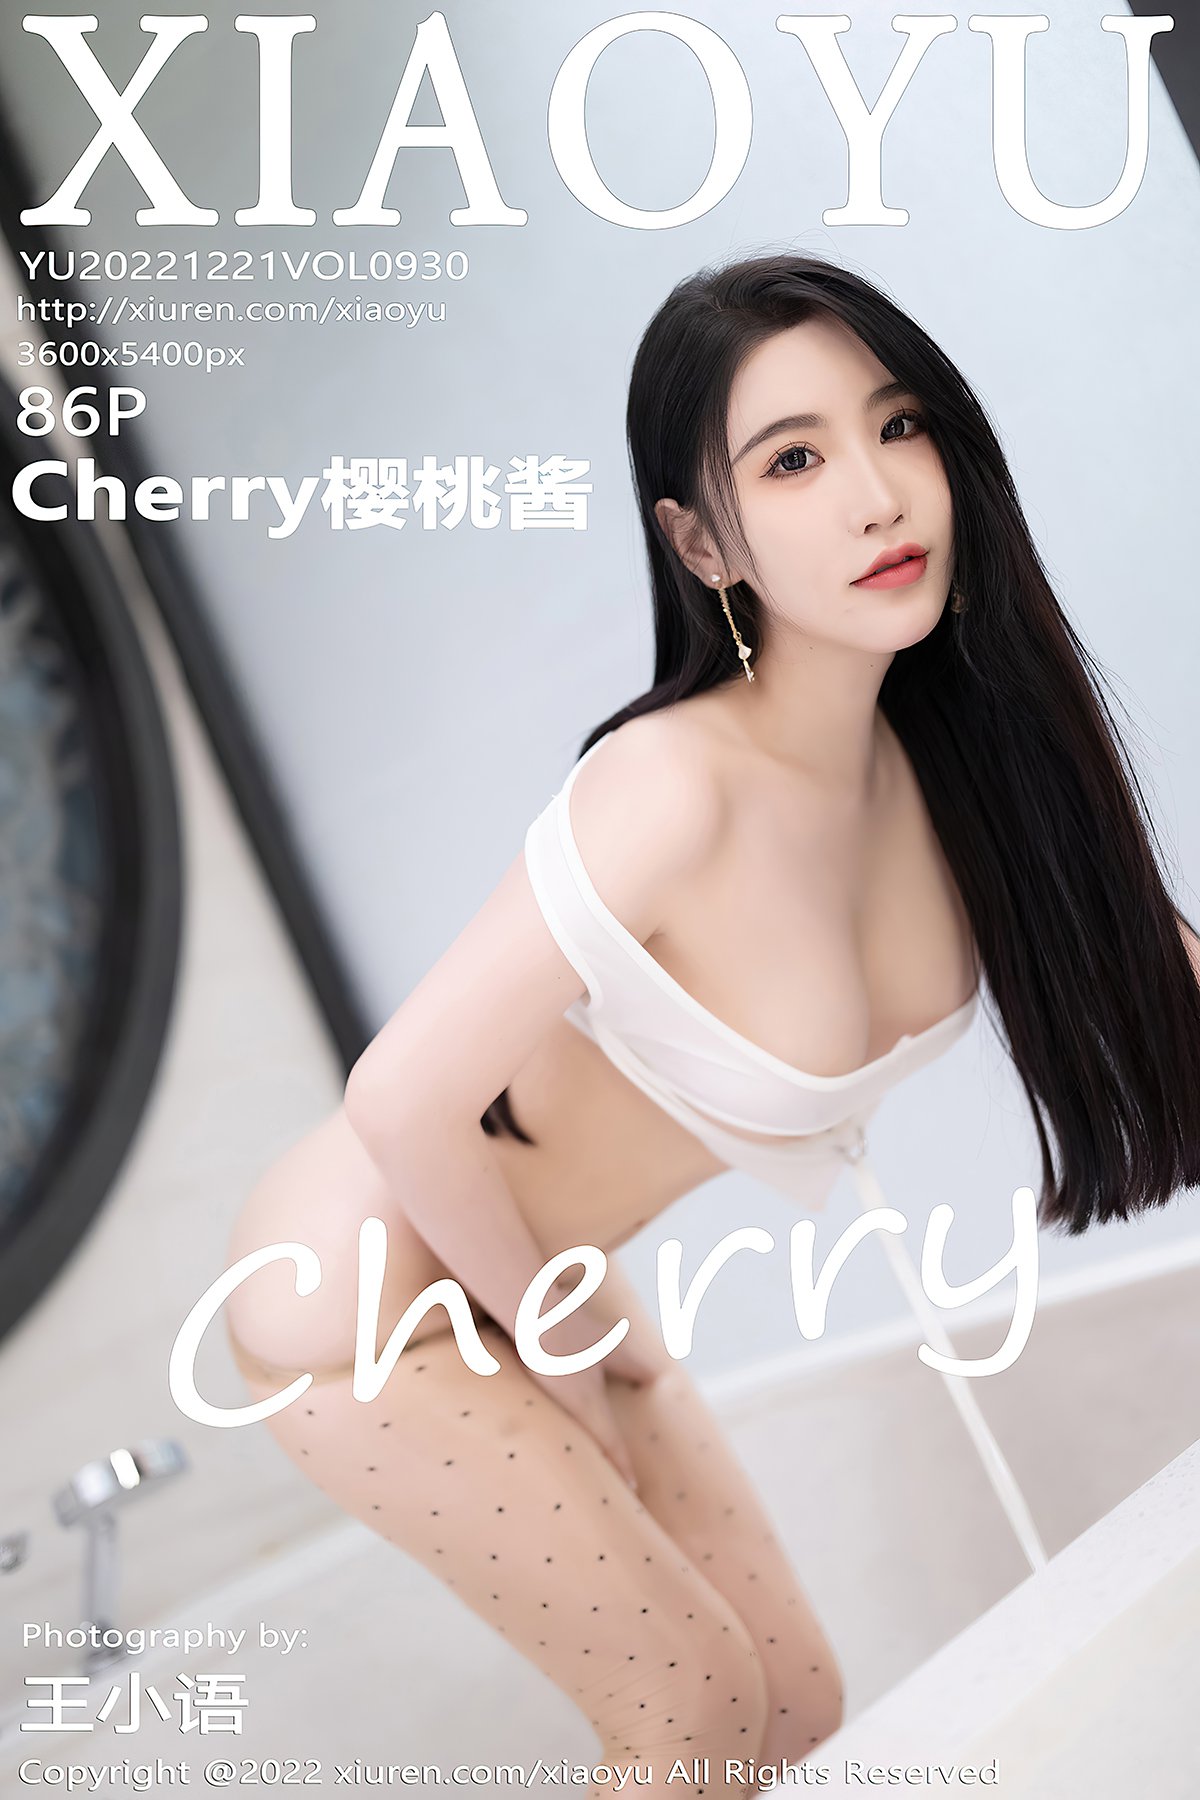 XiaoYu语画界 Vol.930 Cherry Ying Tao Jiang